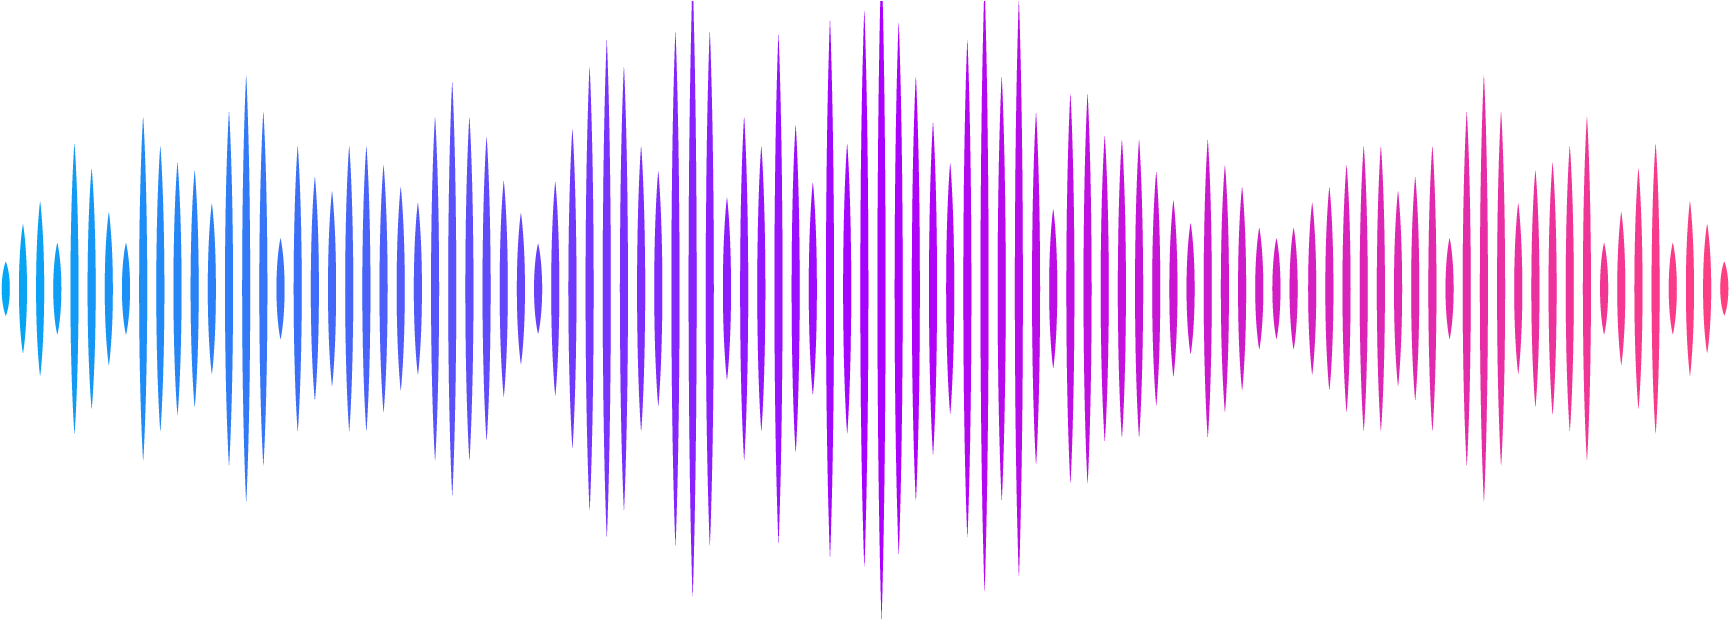 Звук 3 спой. Звуковая волна. Звуковая дорожка. Графическое изображение звука. Звуковая волна эквалайзер.